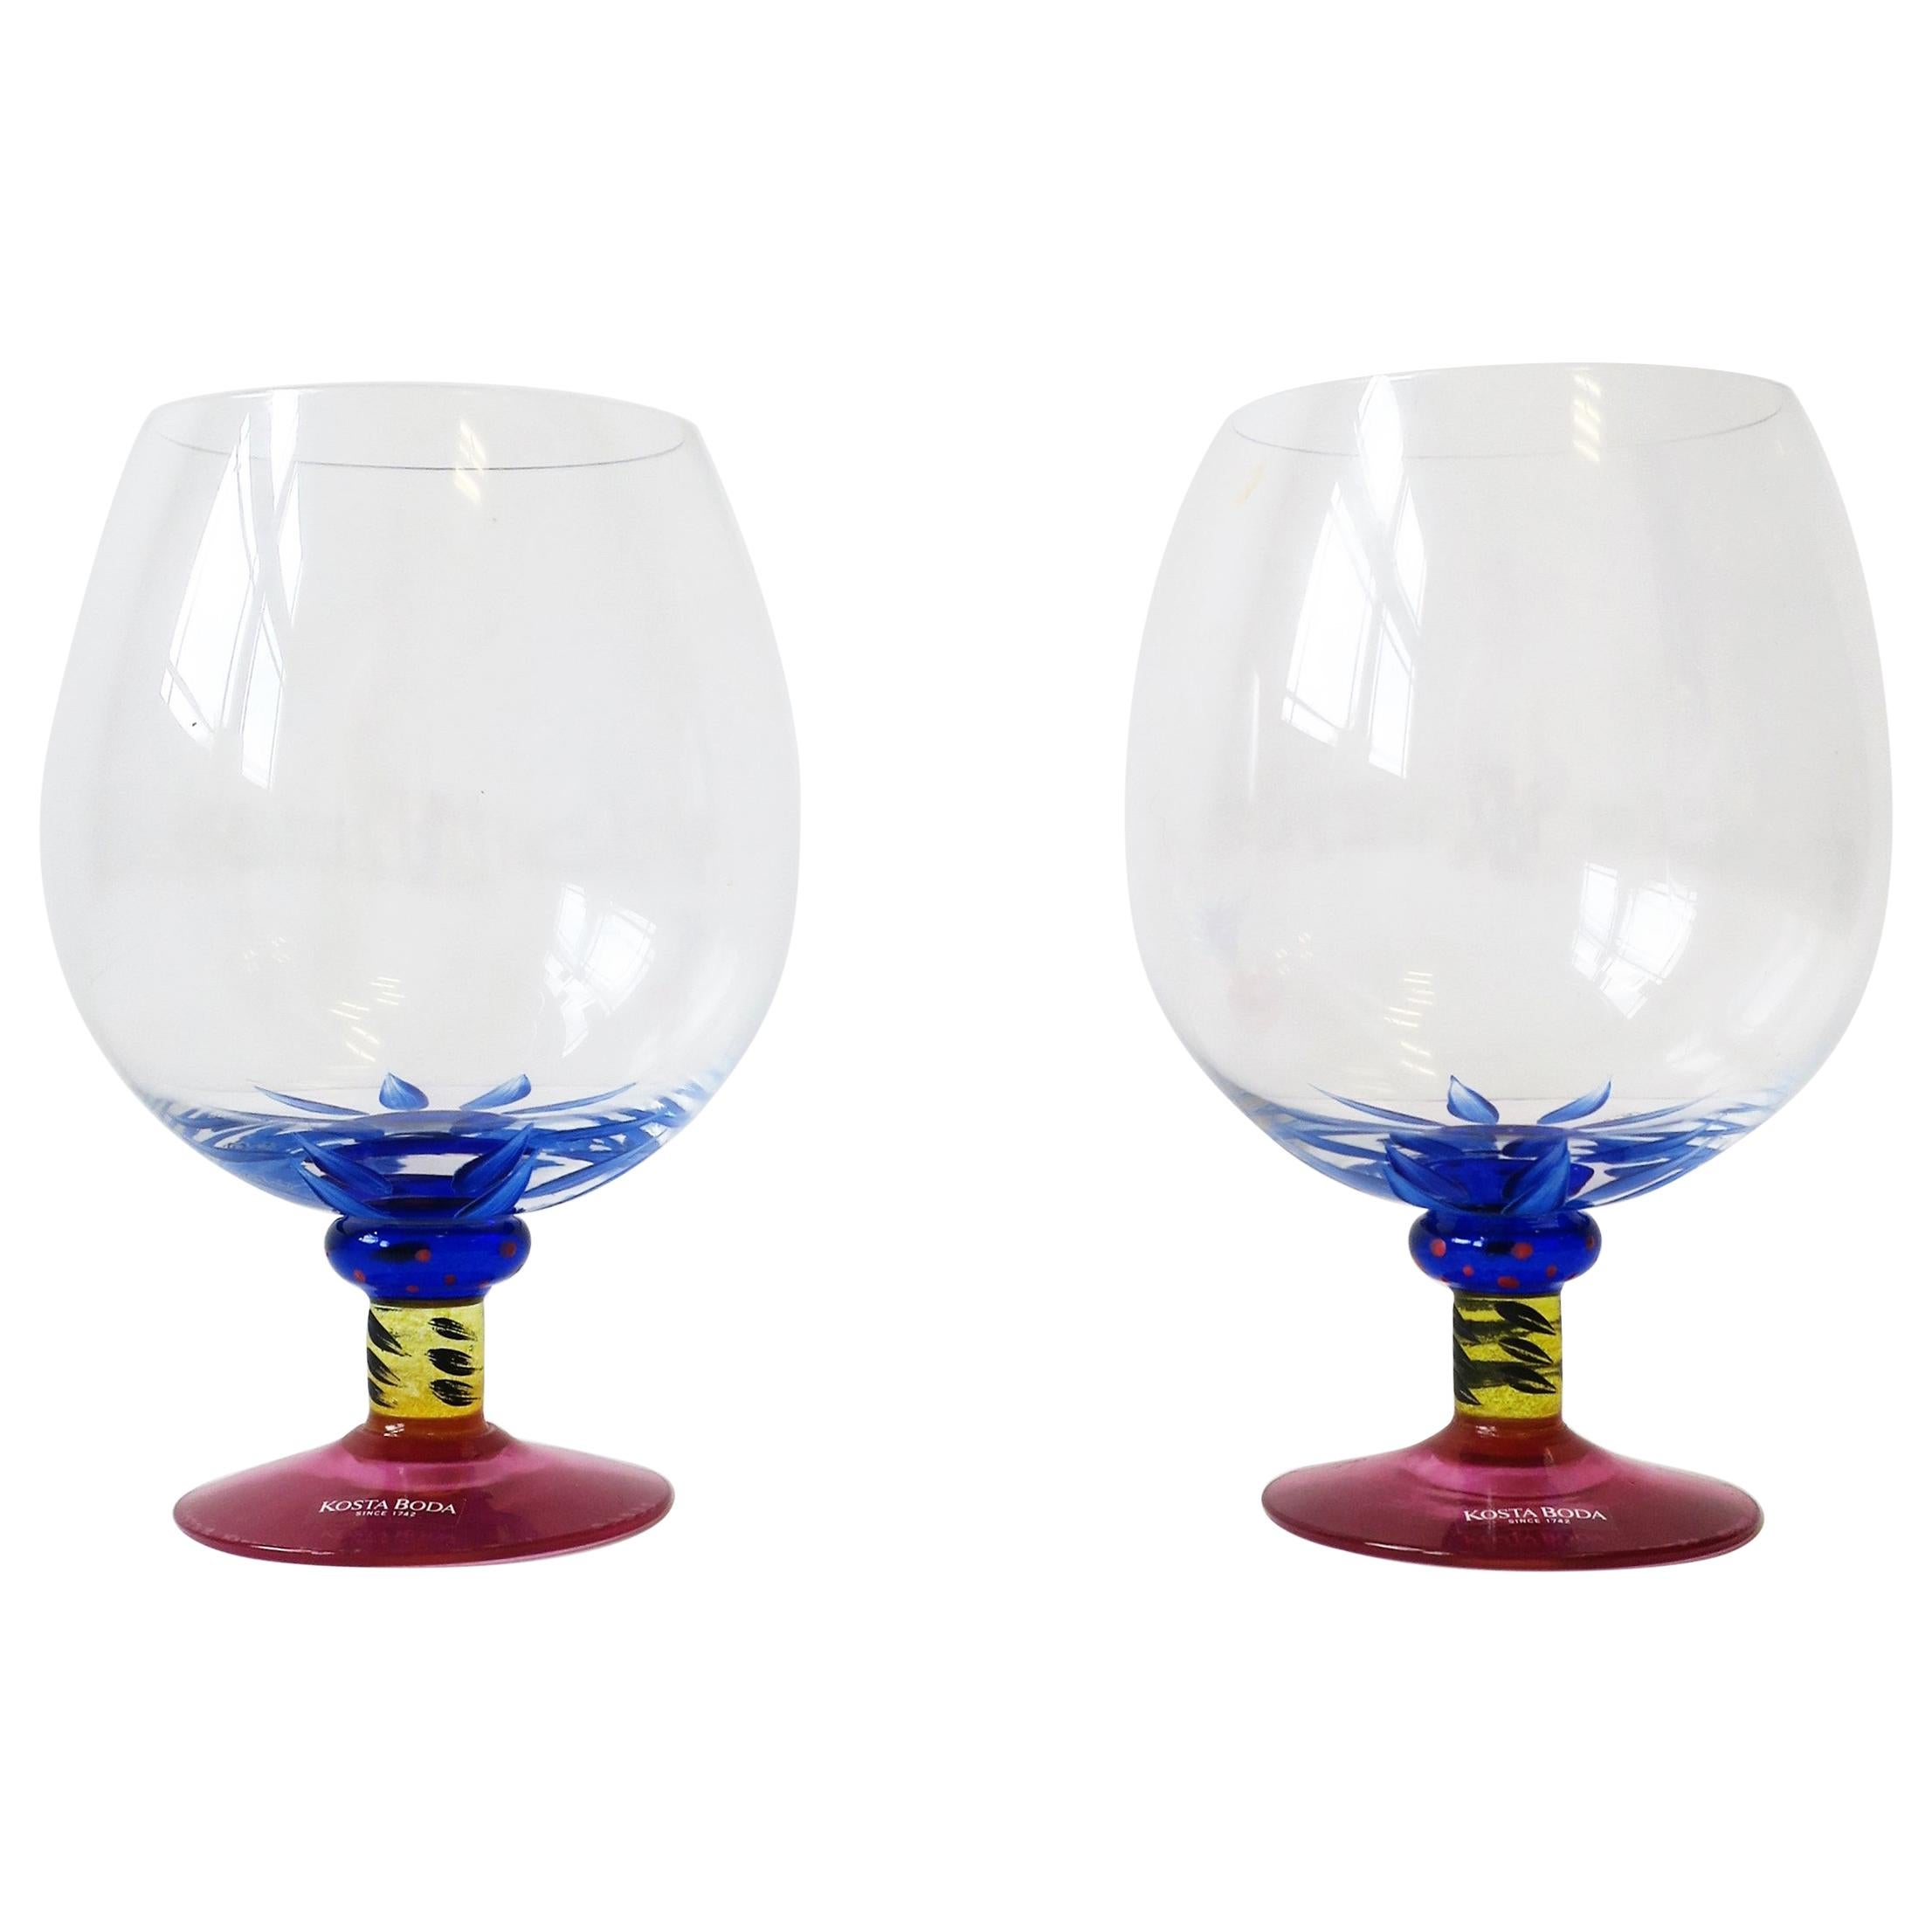 Designer Postmodern Art Glass Cocktail Brandy Glasses by Kosta Boda, '90s Sweden